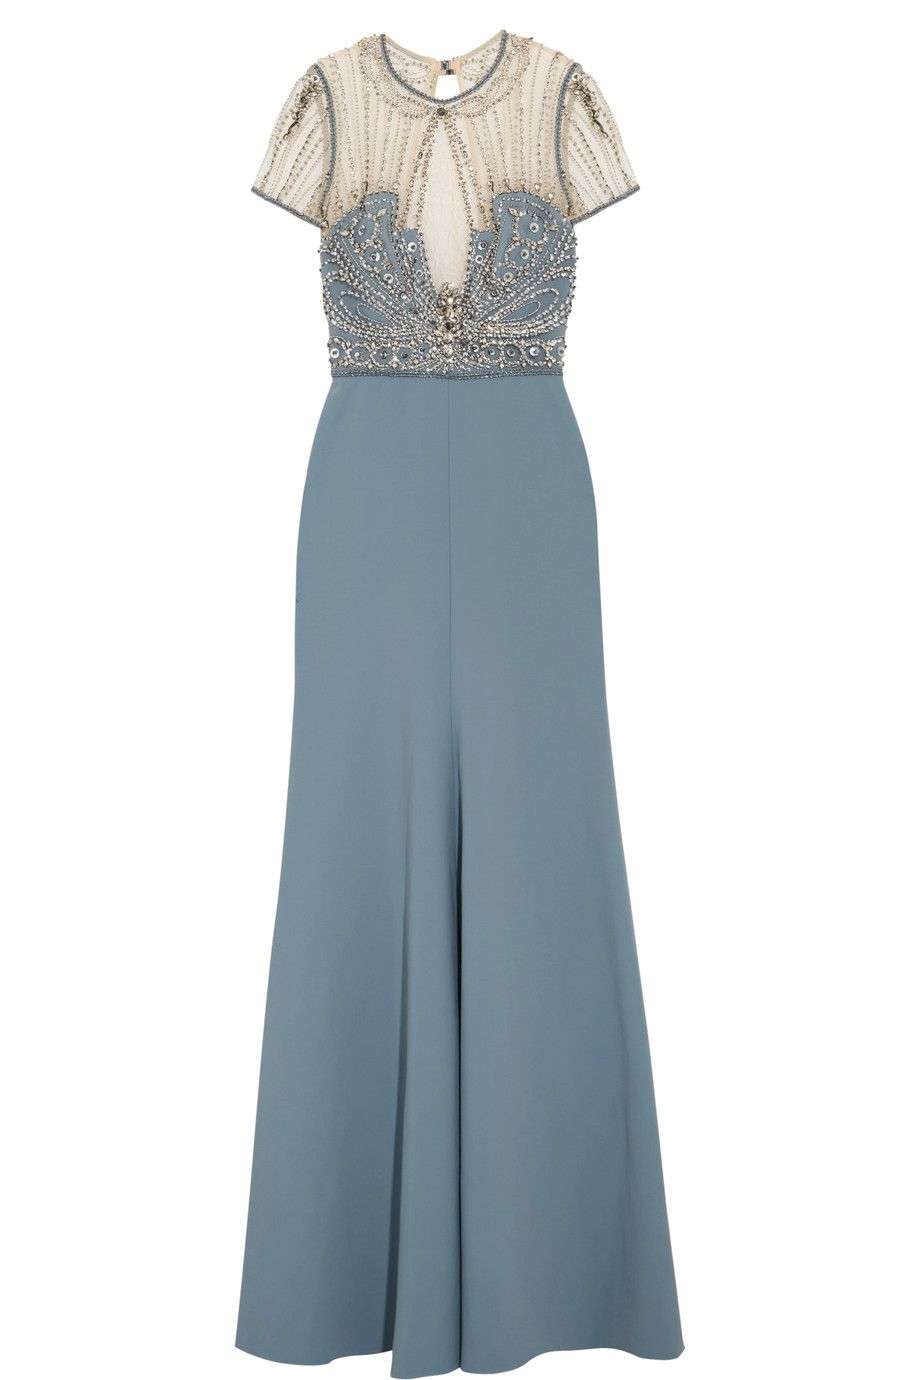 abiti lunghi da cerimonia di sera eleganti come il vestito anni 30 in celeste di Jenny Packham